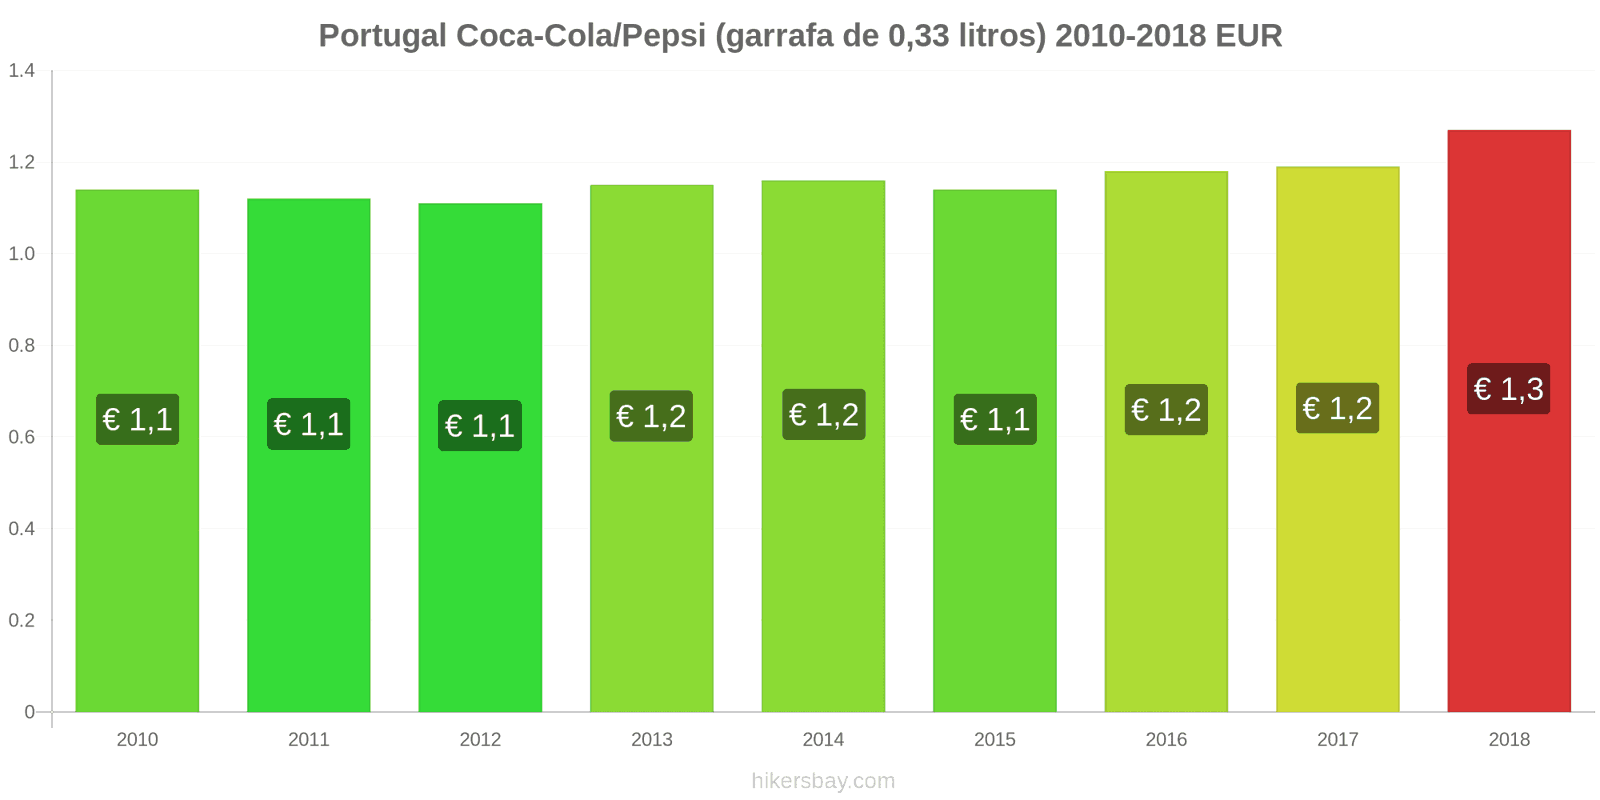 Portugal mudanças de preços Coca-Cola/Pepsi (garrafa de 0.33 litros) hikersbay.com